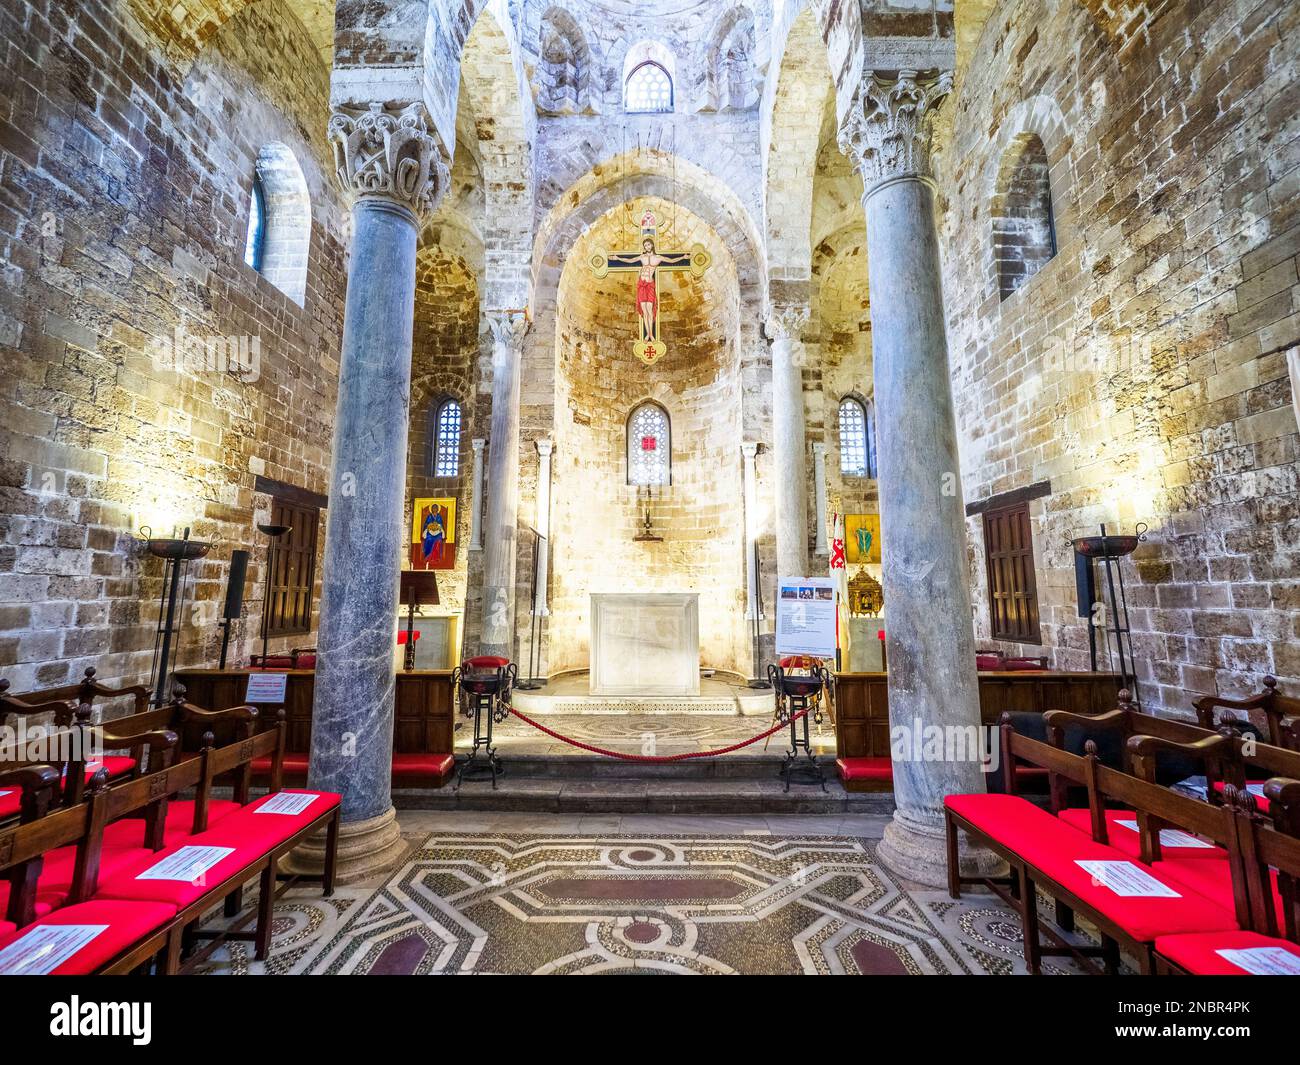 La chiesa in stile architettonico arabo-normanno di San Cataldo - Palermo, Sicilia, Italia Foto Stock